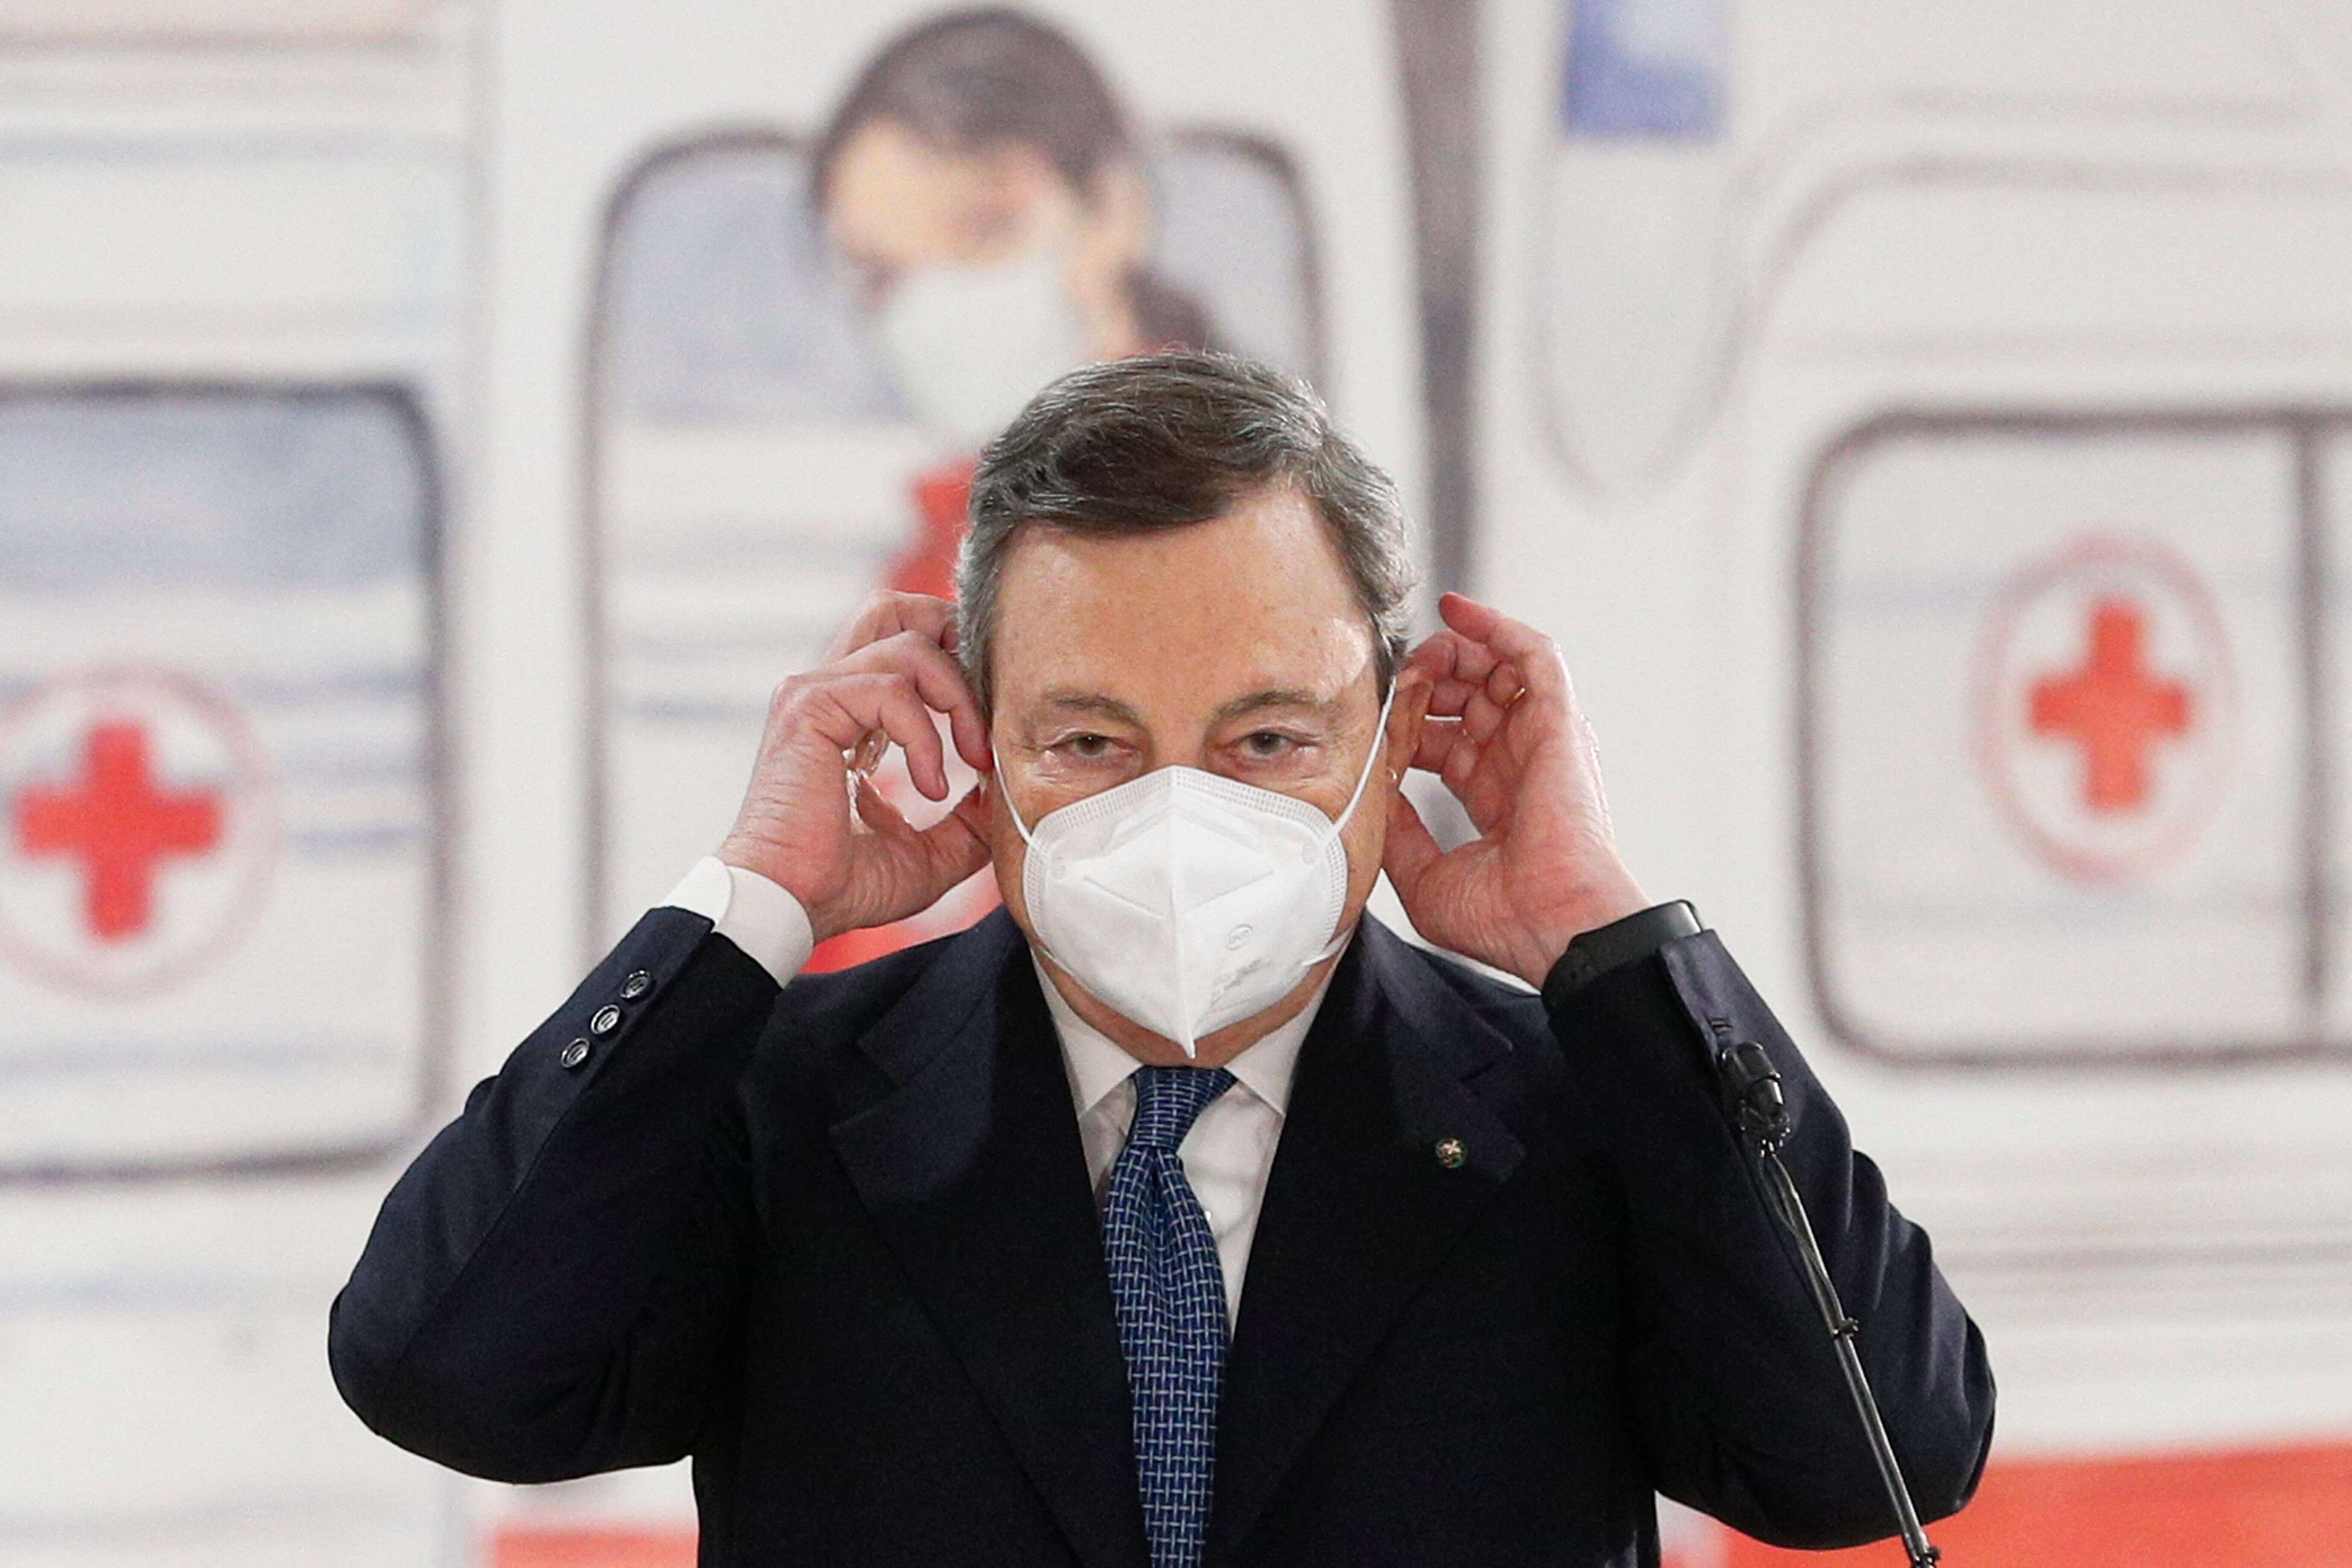 Le Premier ministre italien Mario Draghi, ici photographié ce 12 mars à l'occasion de sa visite d'un centre de vaccination à l'aéroport de Rome, a annoncé que l'Italie reconfinerait une large partie de son territoire à partir du 15 mars pour faire face à l'épidémie de covid-19.